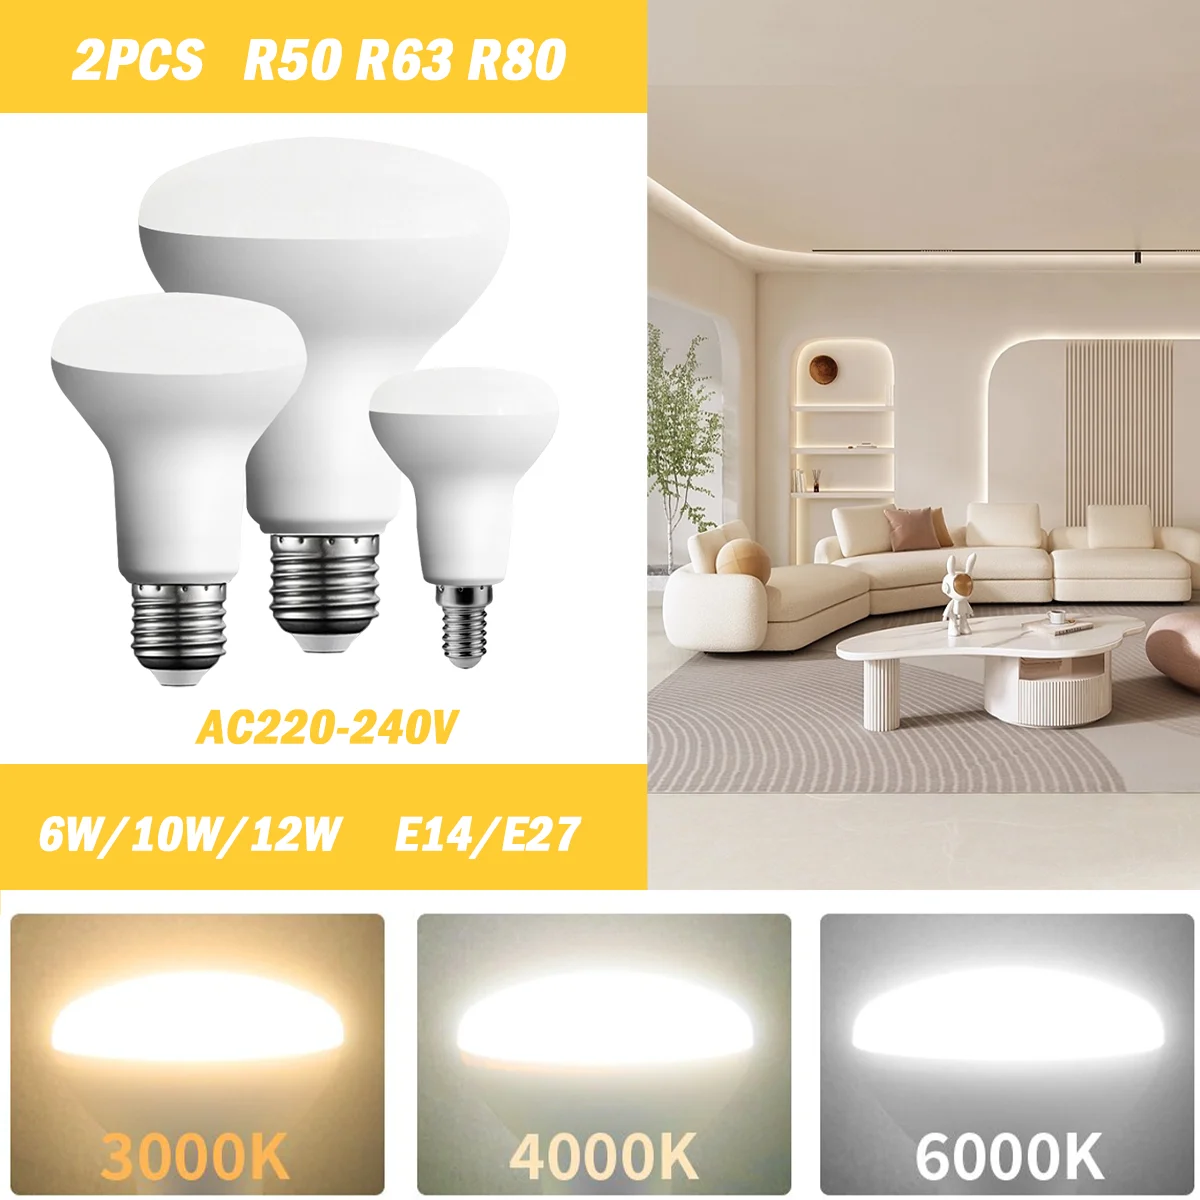 ǿ LED   , R80 R63 R50 AC220-240V, 6W, 10W, 12W, Ʈκ  3000K, 4000K, 6000K  , 2 